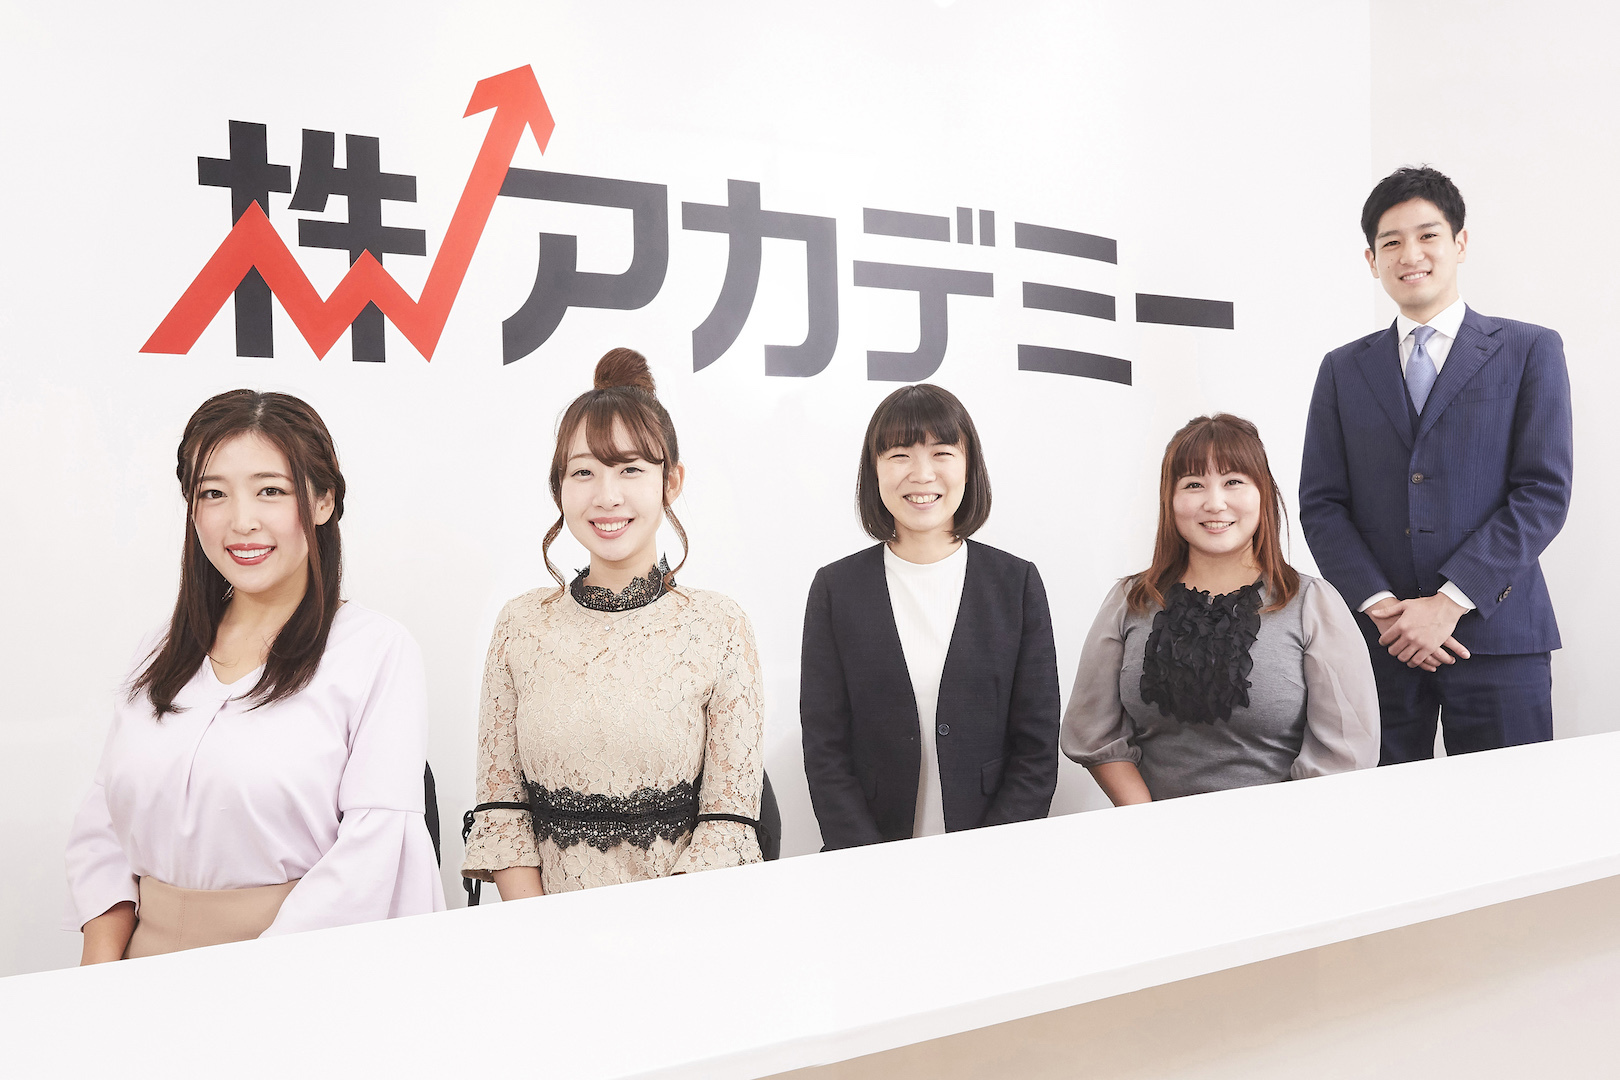 株式投資専門スクール『株アカデミー』が
東京八重洲にサービスステーションを1月25日グランドオープン